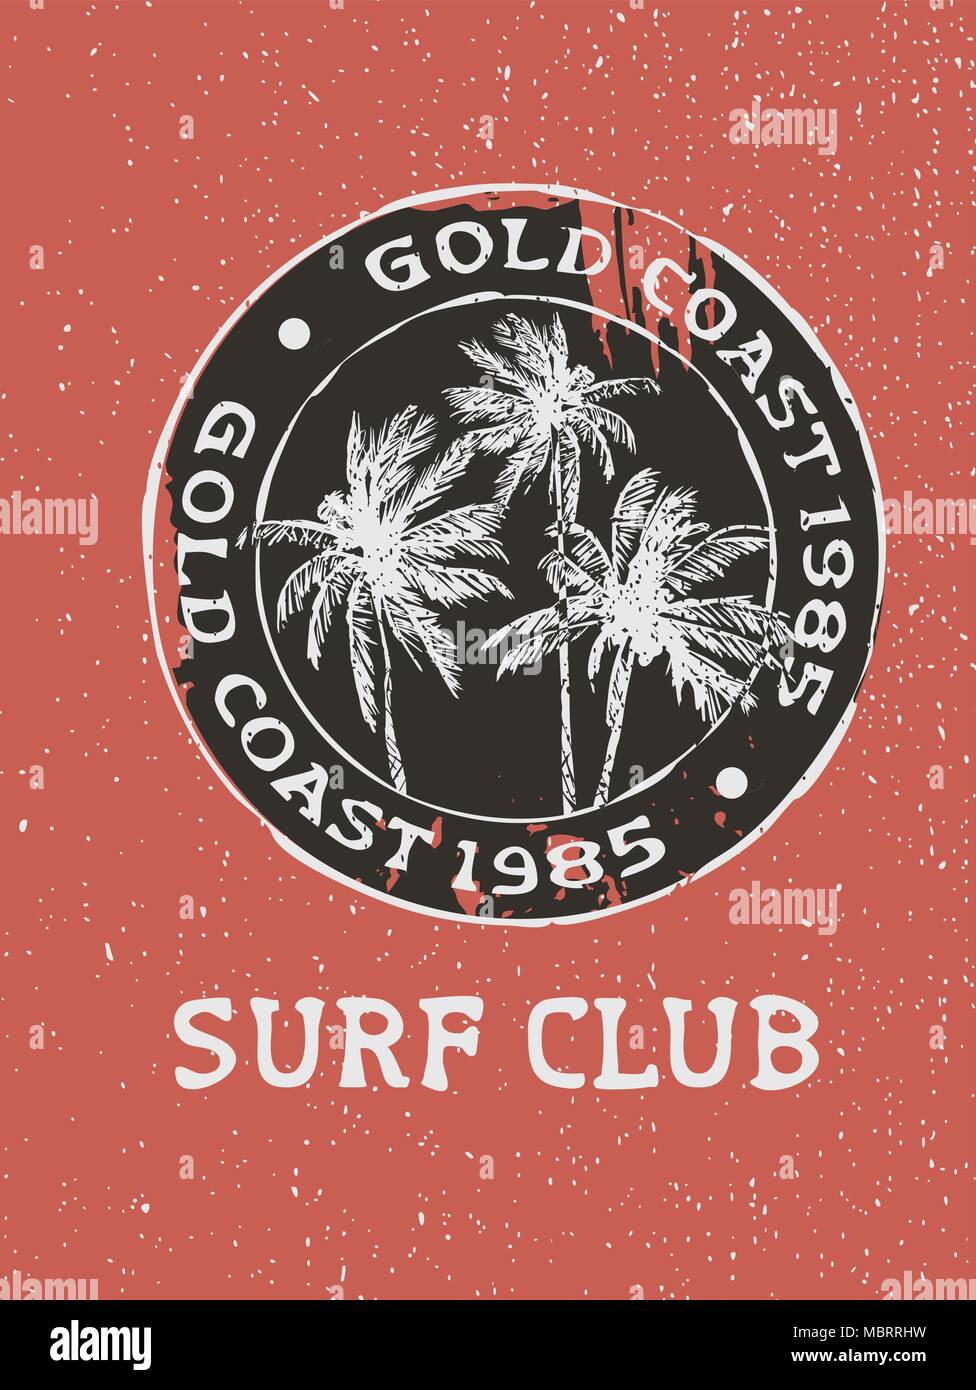 Vintage Surf Club typographie avec grunge texture et palmiers dessinés à la main. Calligraphie texte surfeur stamp idéal pour imprimer, carte ou usage textile. EPS10 Illustration de Vecteur